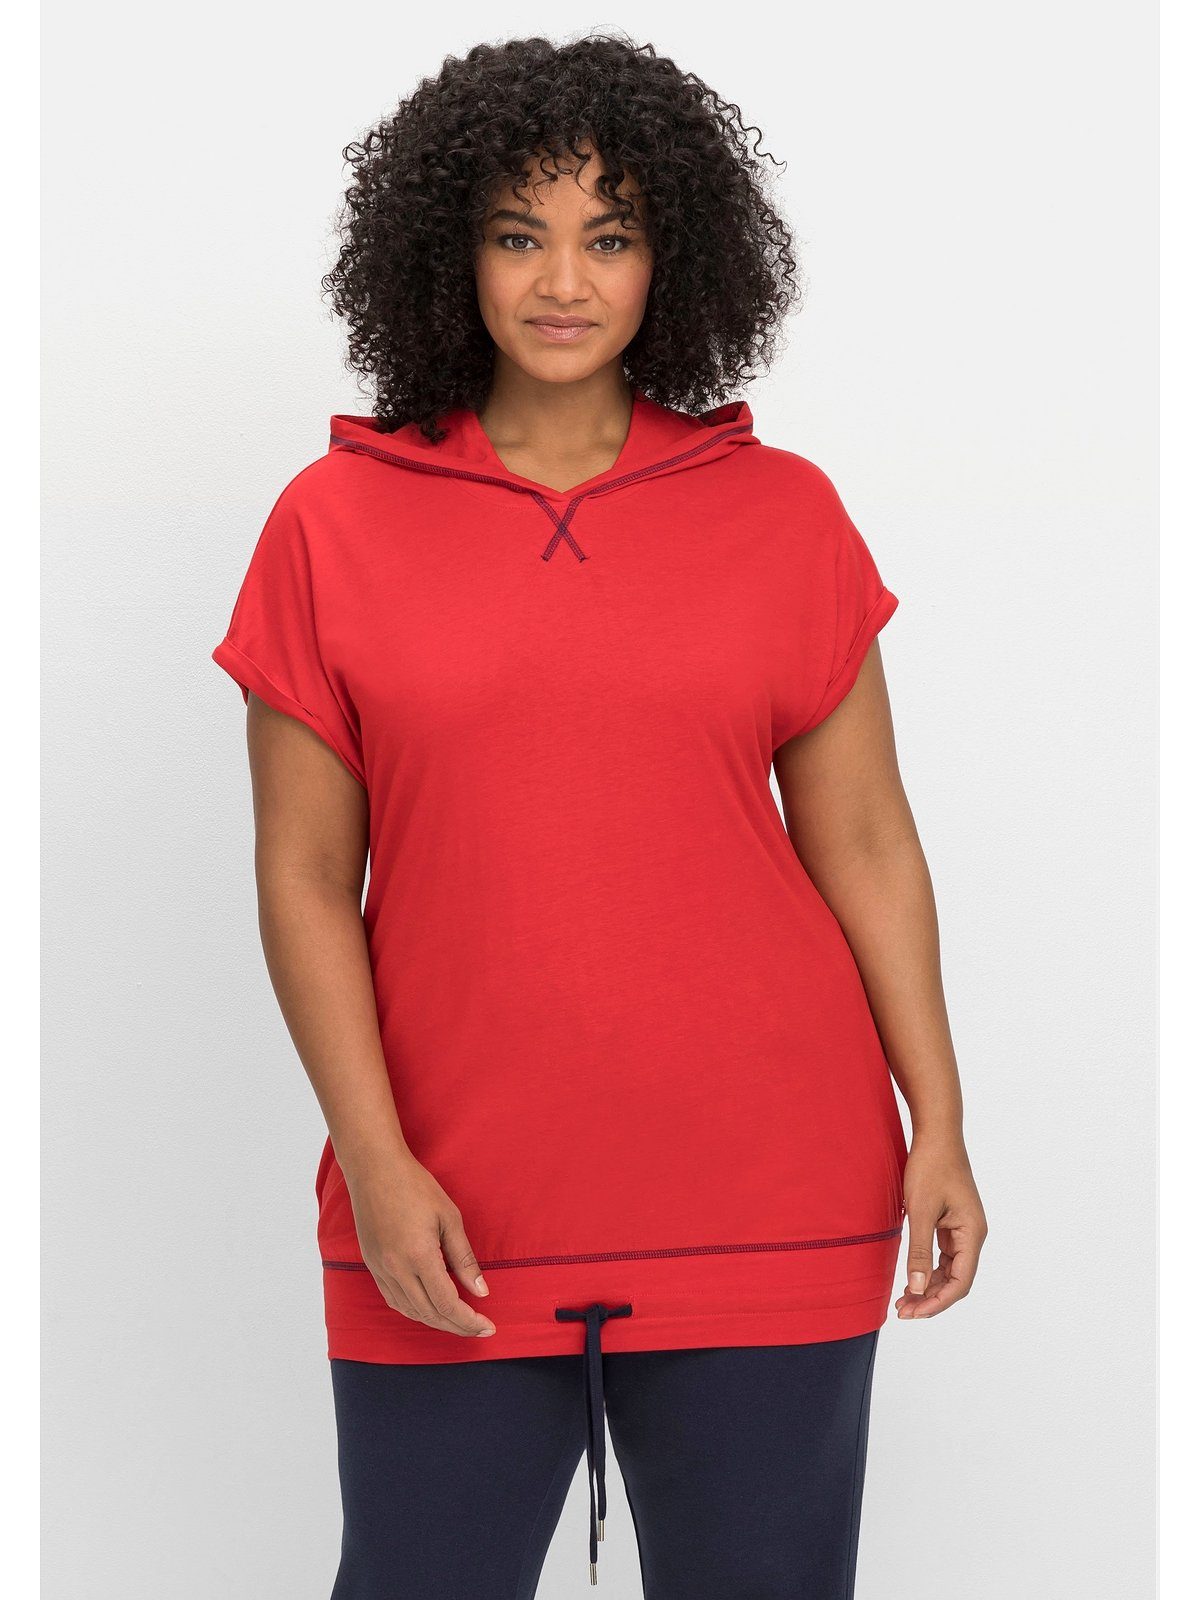 Sheego T-Shirt Große Größen Saumbund und mit Kapuze mohnrot